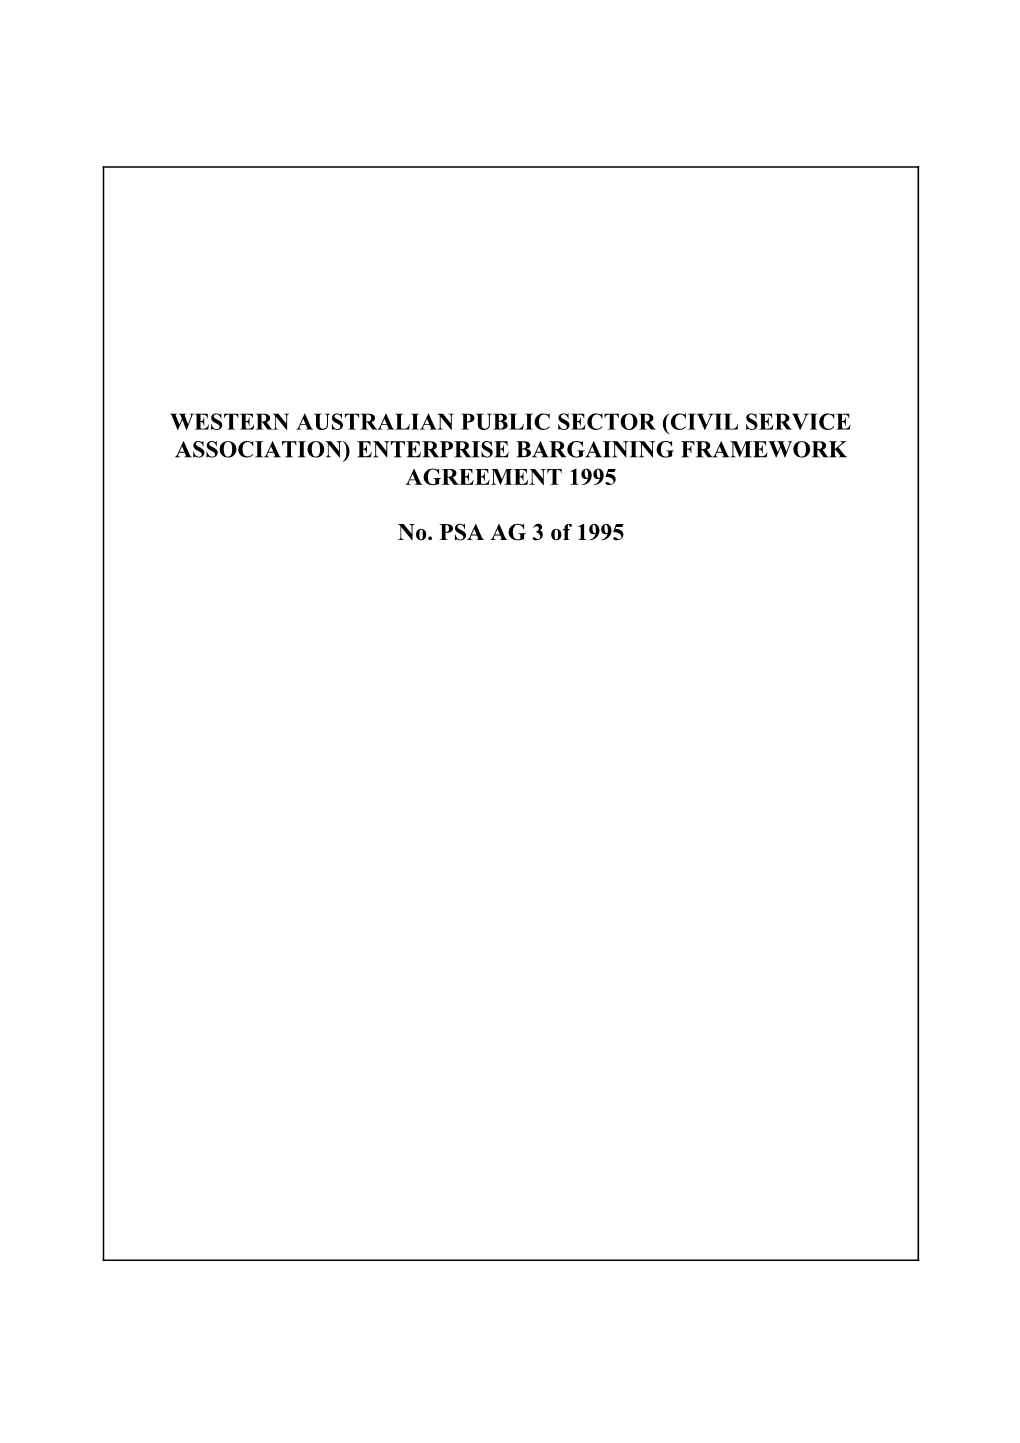 PSA AG 3 1995 Western Australian Public Sector (Civil Service Association) Enterprise Bargaining